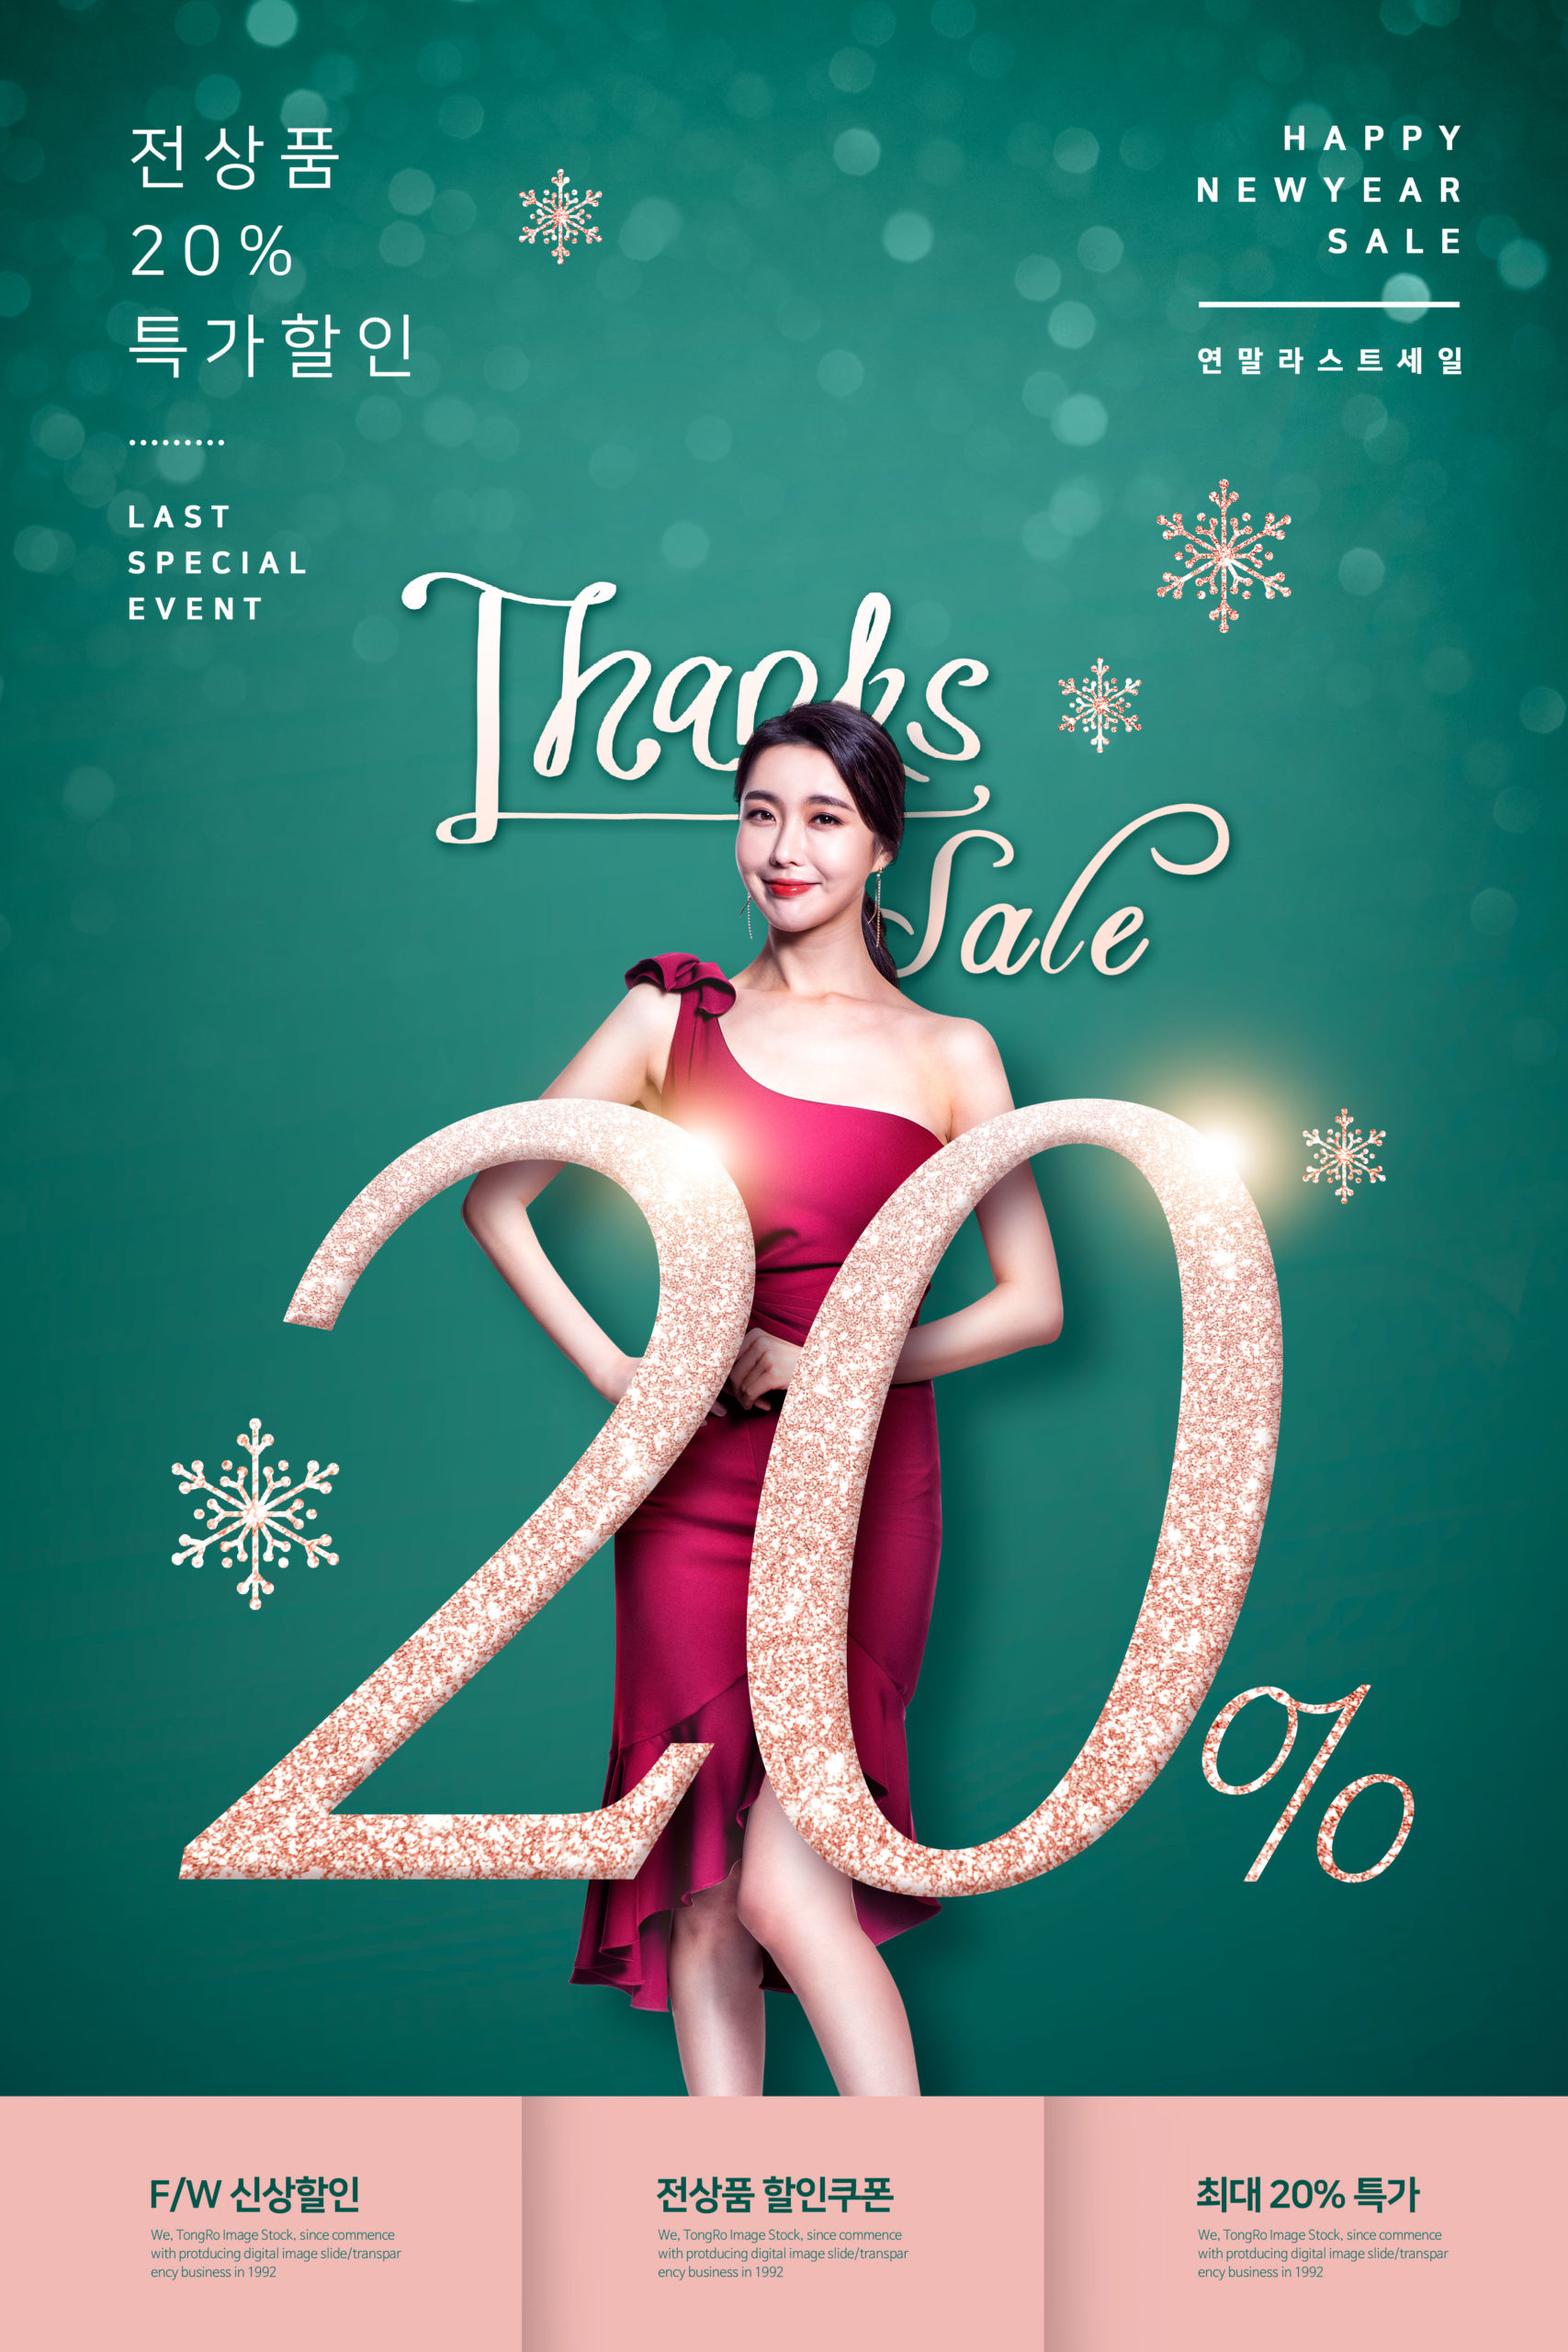 新年特价促销购物活动广告海报PSD素材第一素材精选模板插图